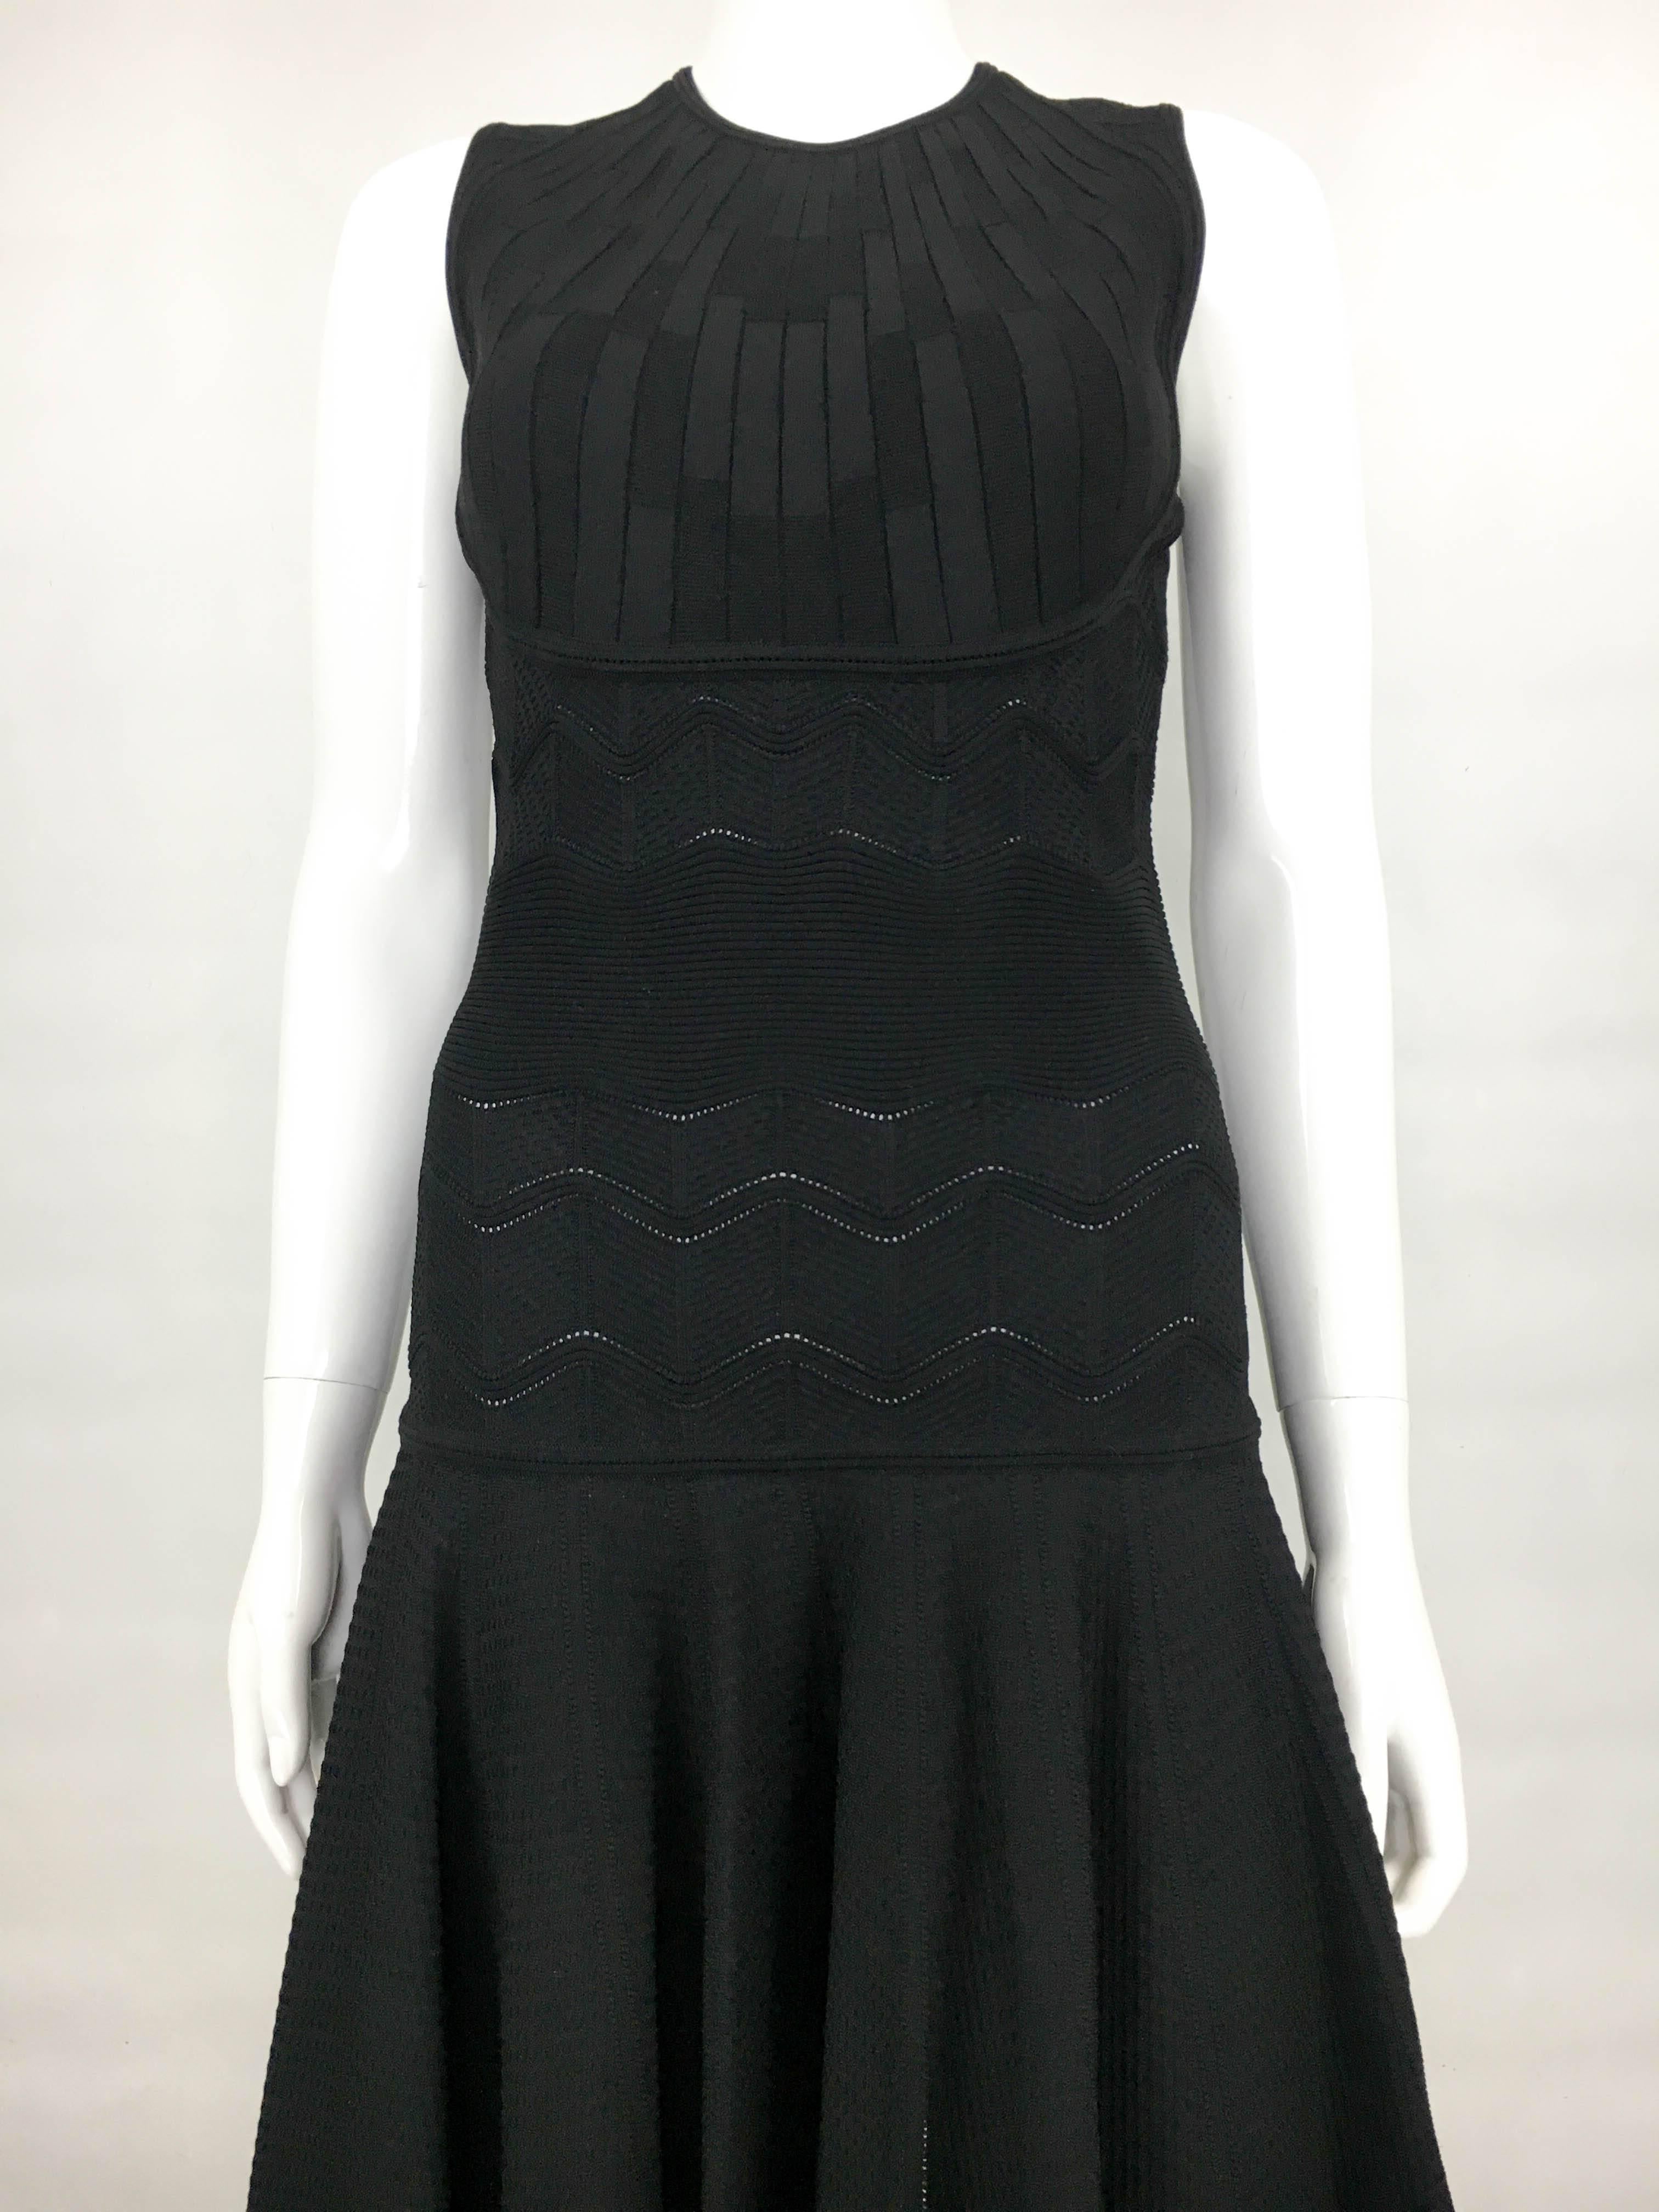 2010's Alexander McQueen Black Dress 4